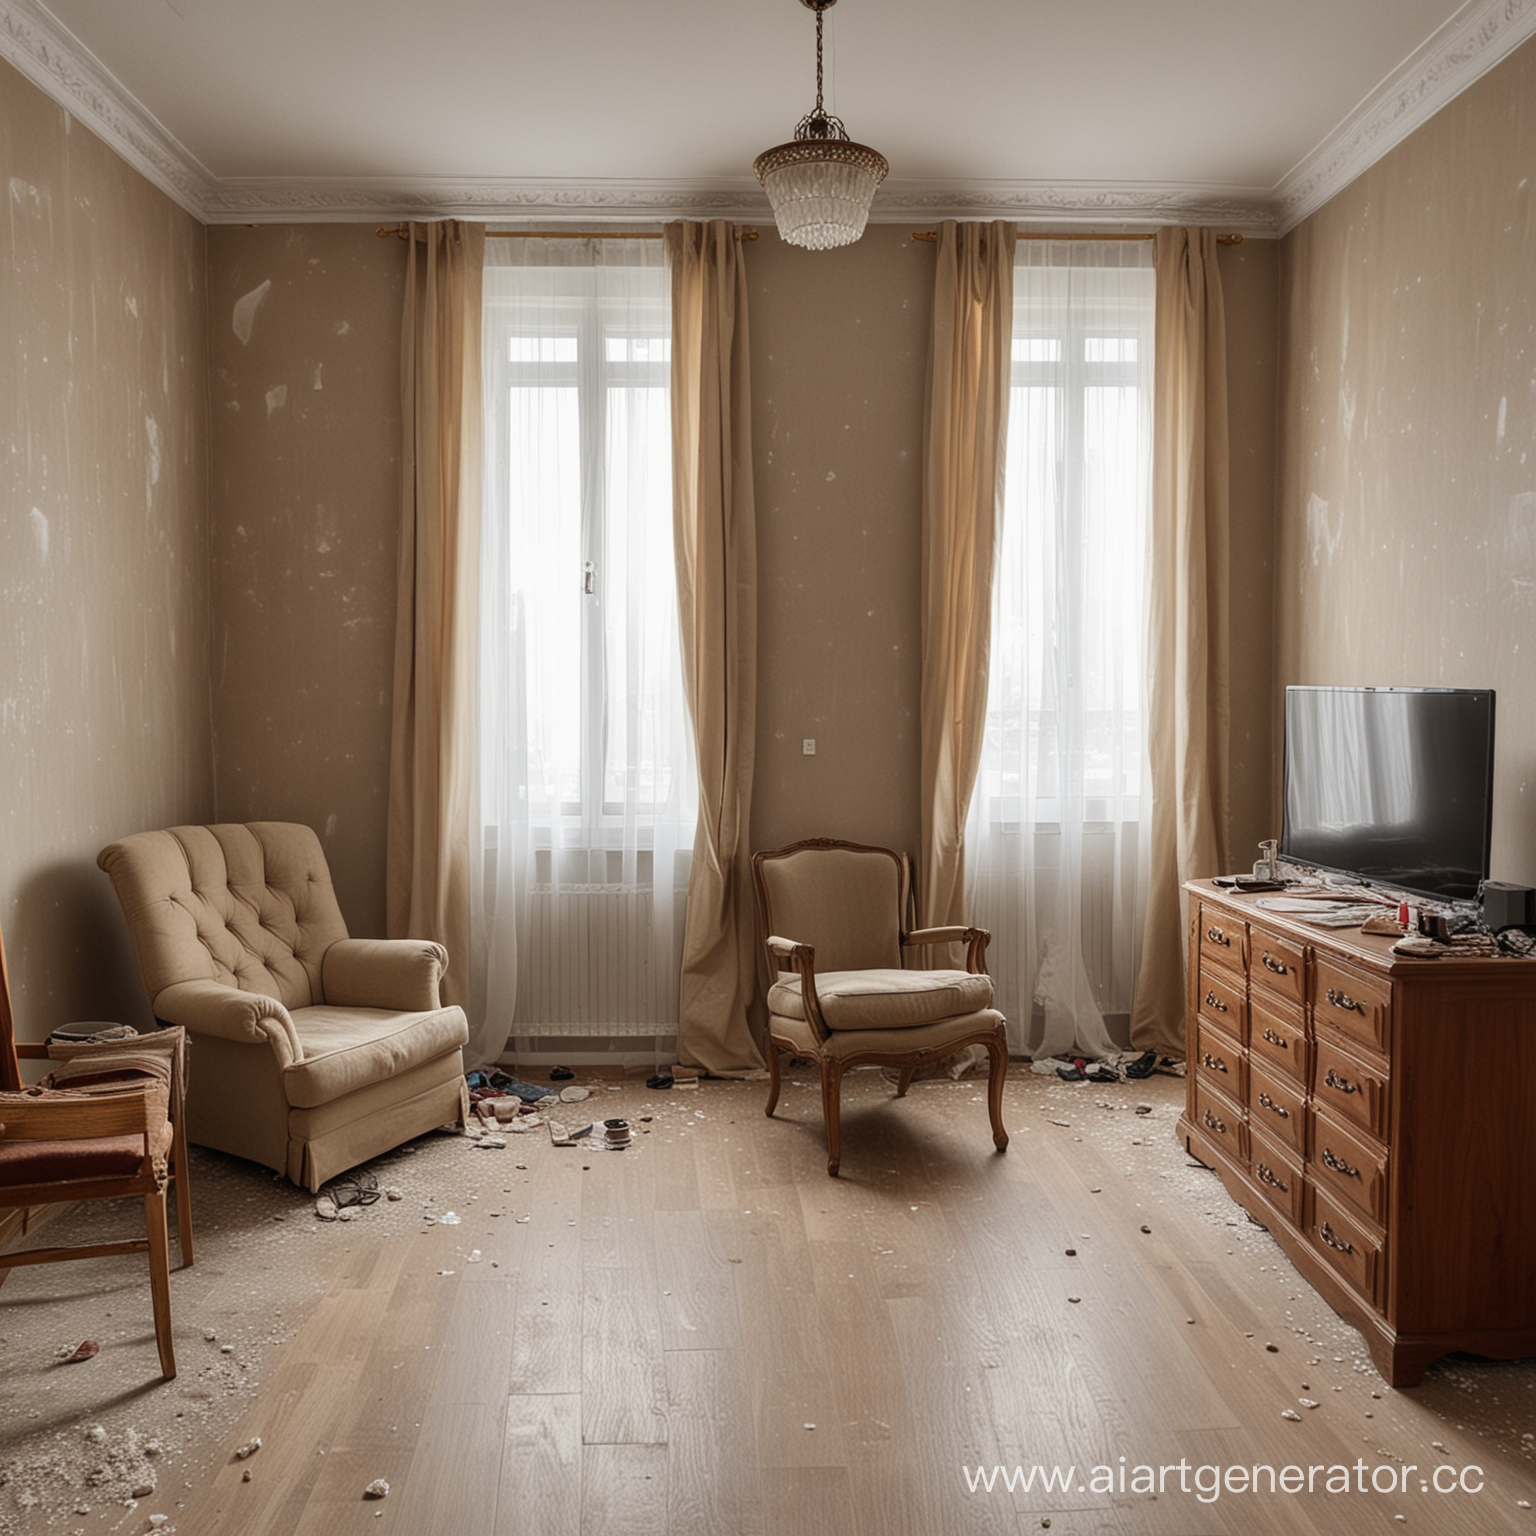 квартира обставленная мебелью - шкафы, кресла, стол, стулья, людей нет, пусто, давно никто не живет, везде пыль, вещи разбросаны, фото на стенах
